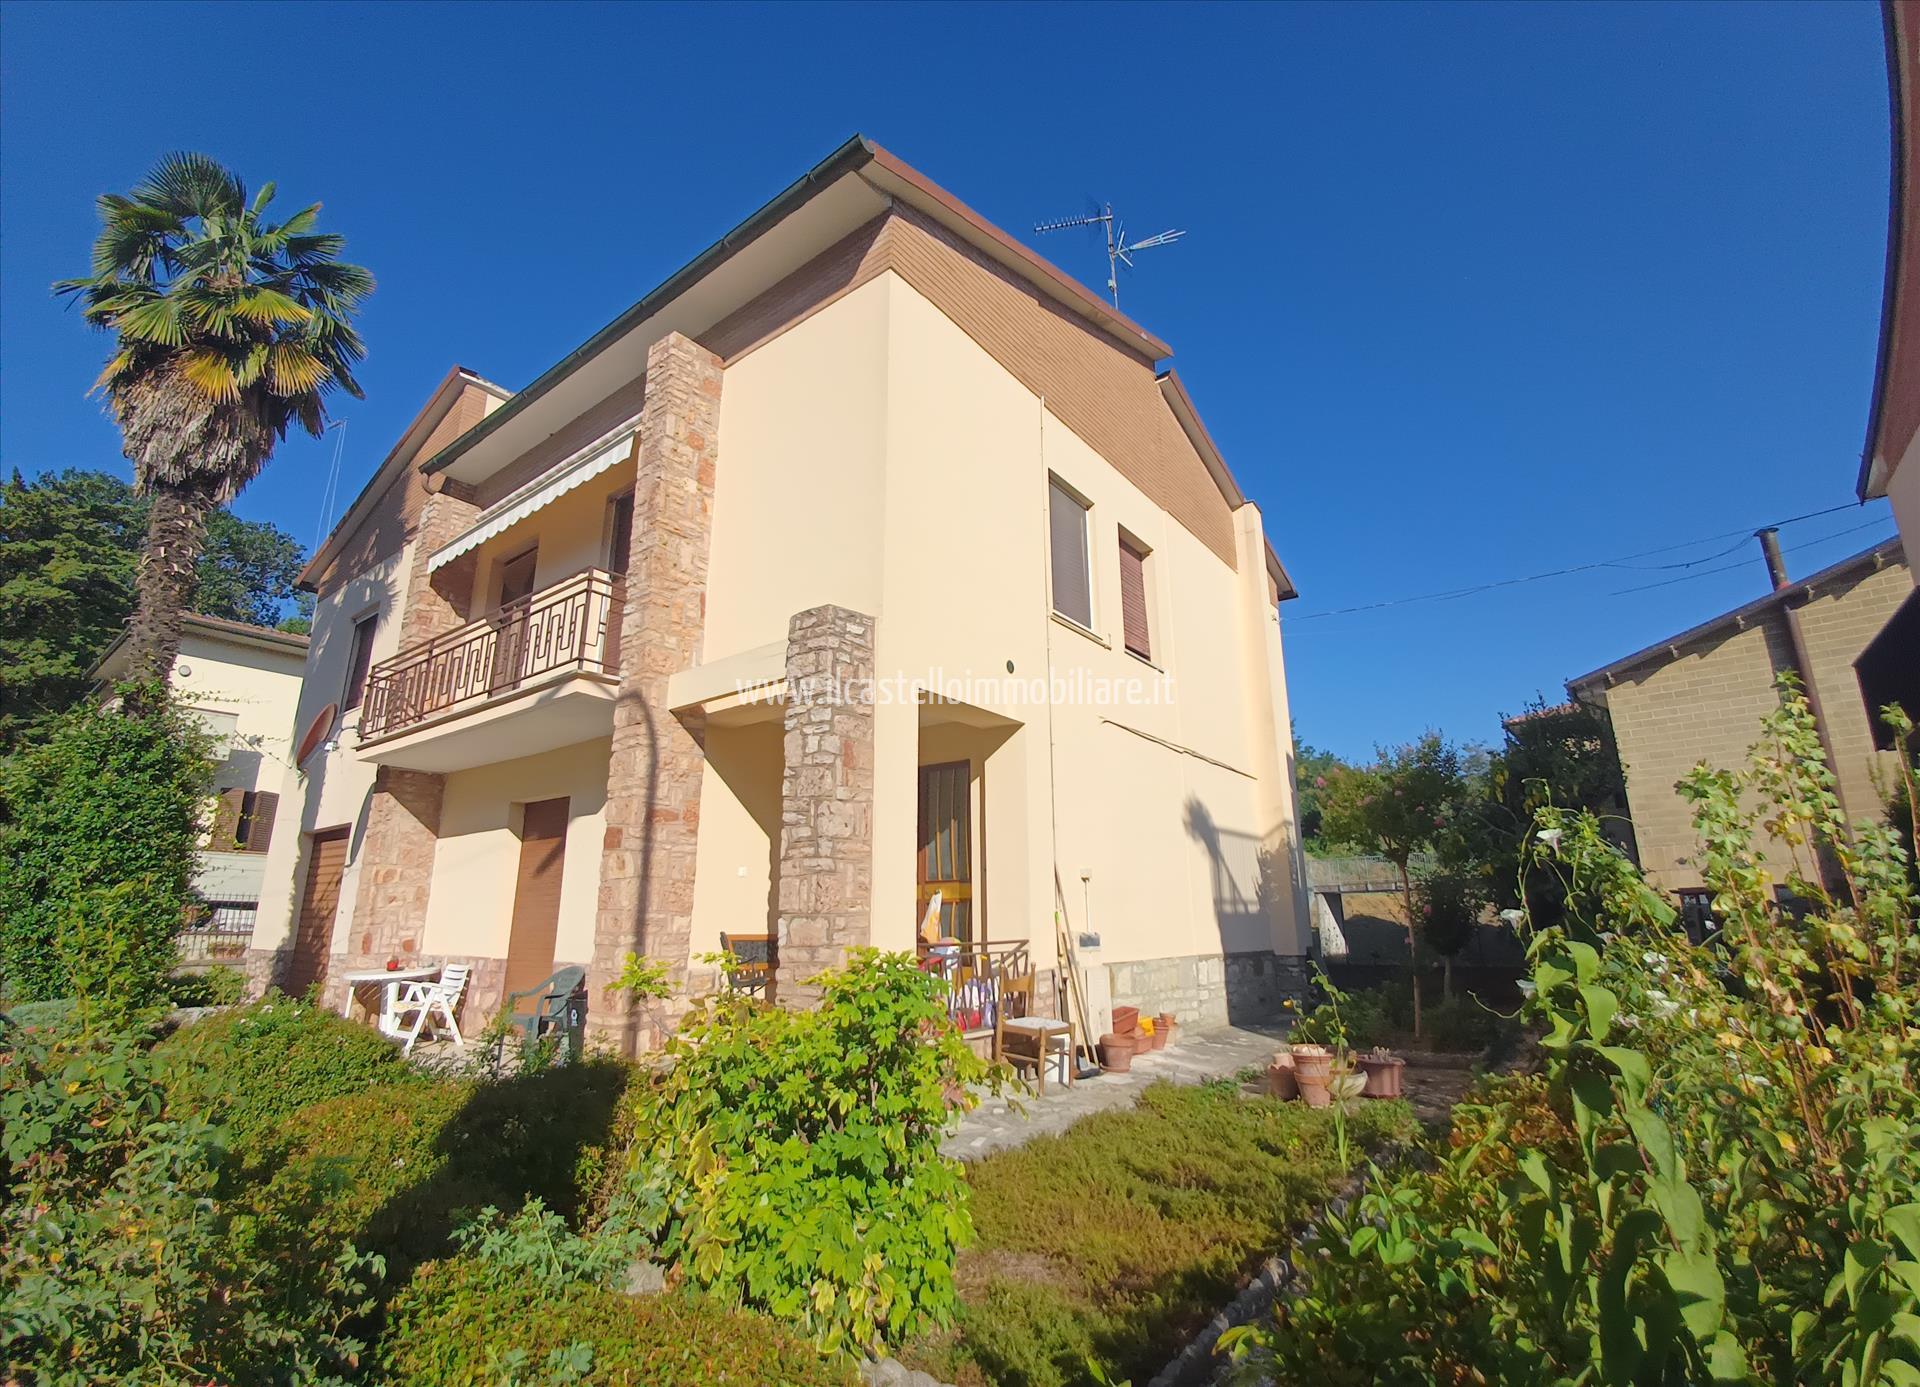 Villa in vendita a Chiusi, 4 locali, prezzo € 190.000 | PortaleAgenzieImmobiliari.it